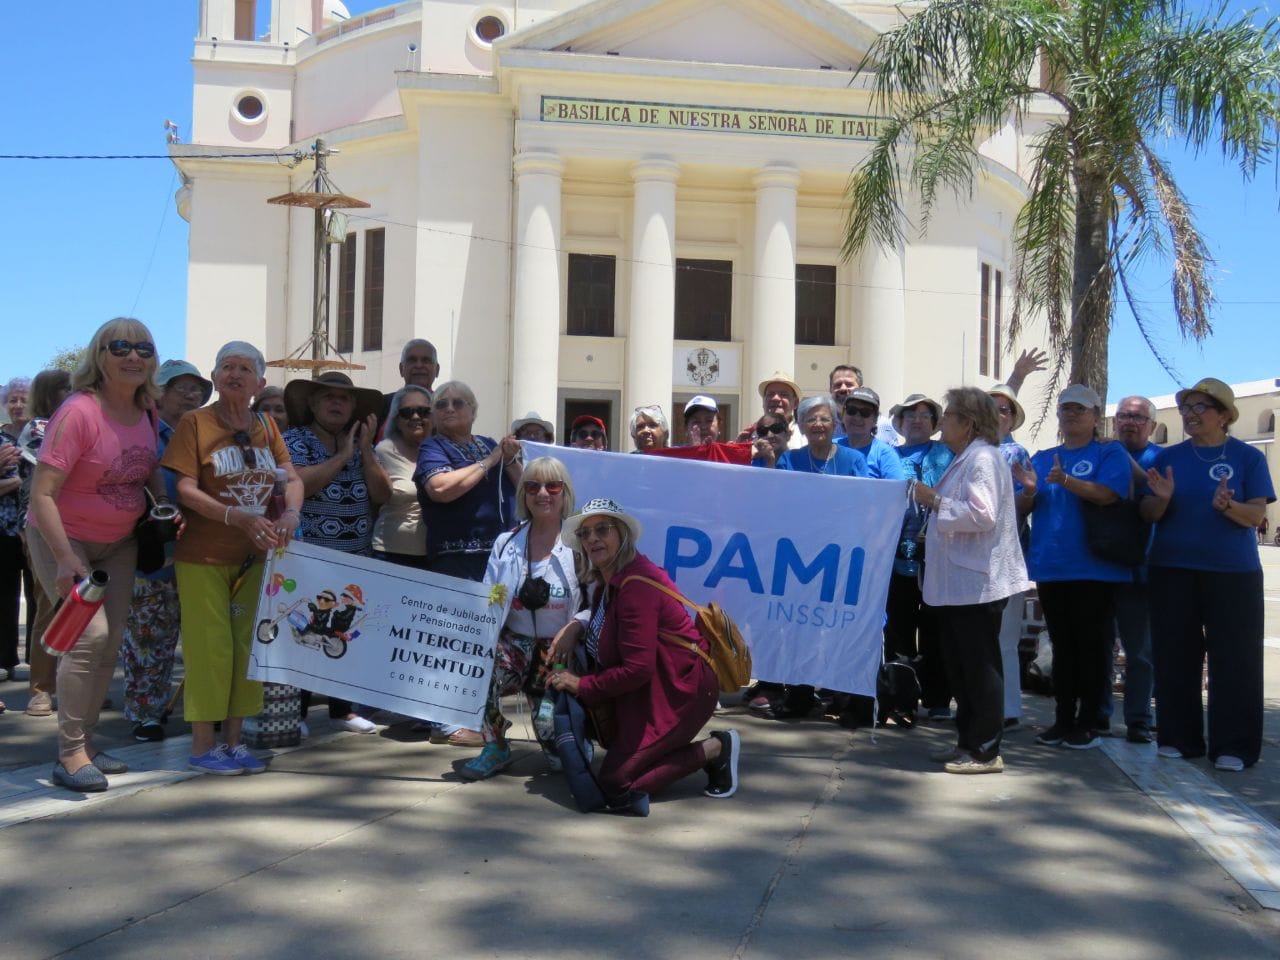 Afiliados de PAMI visitaron la Basílica Nuestra Señora de Itatí